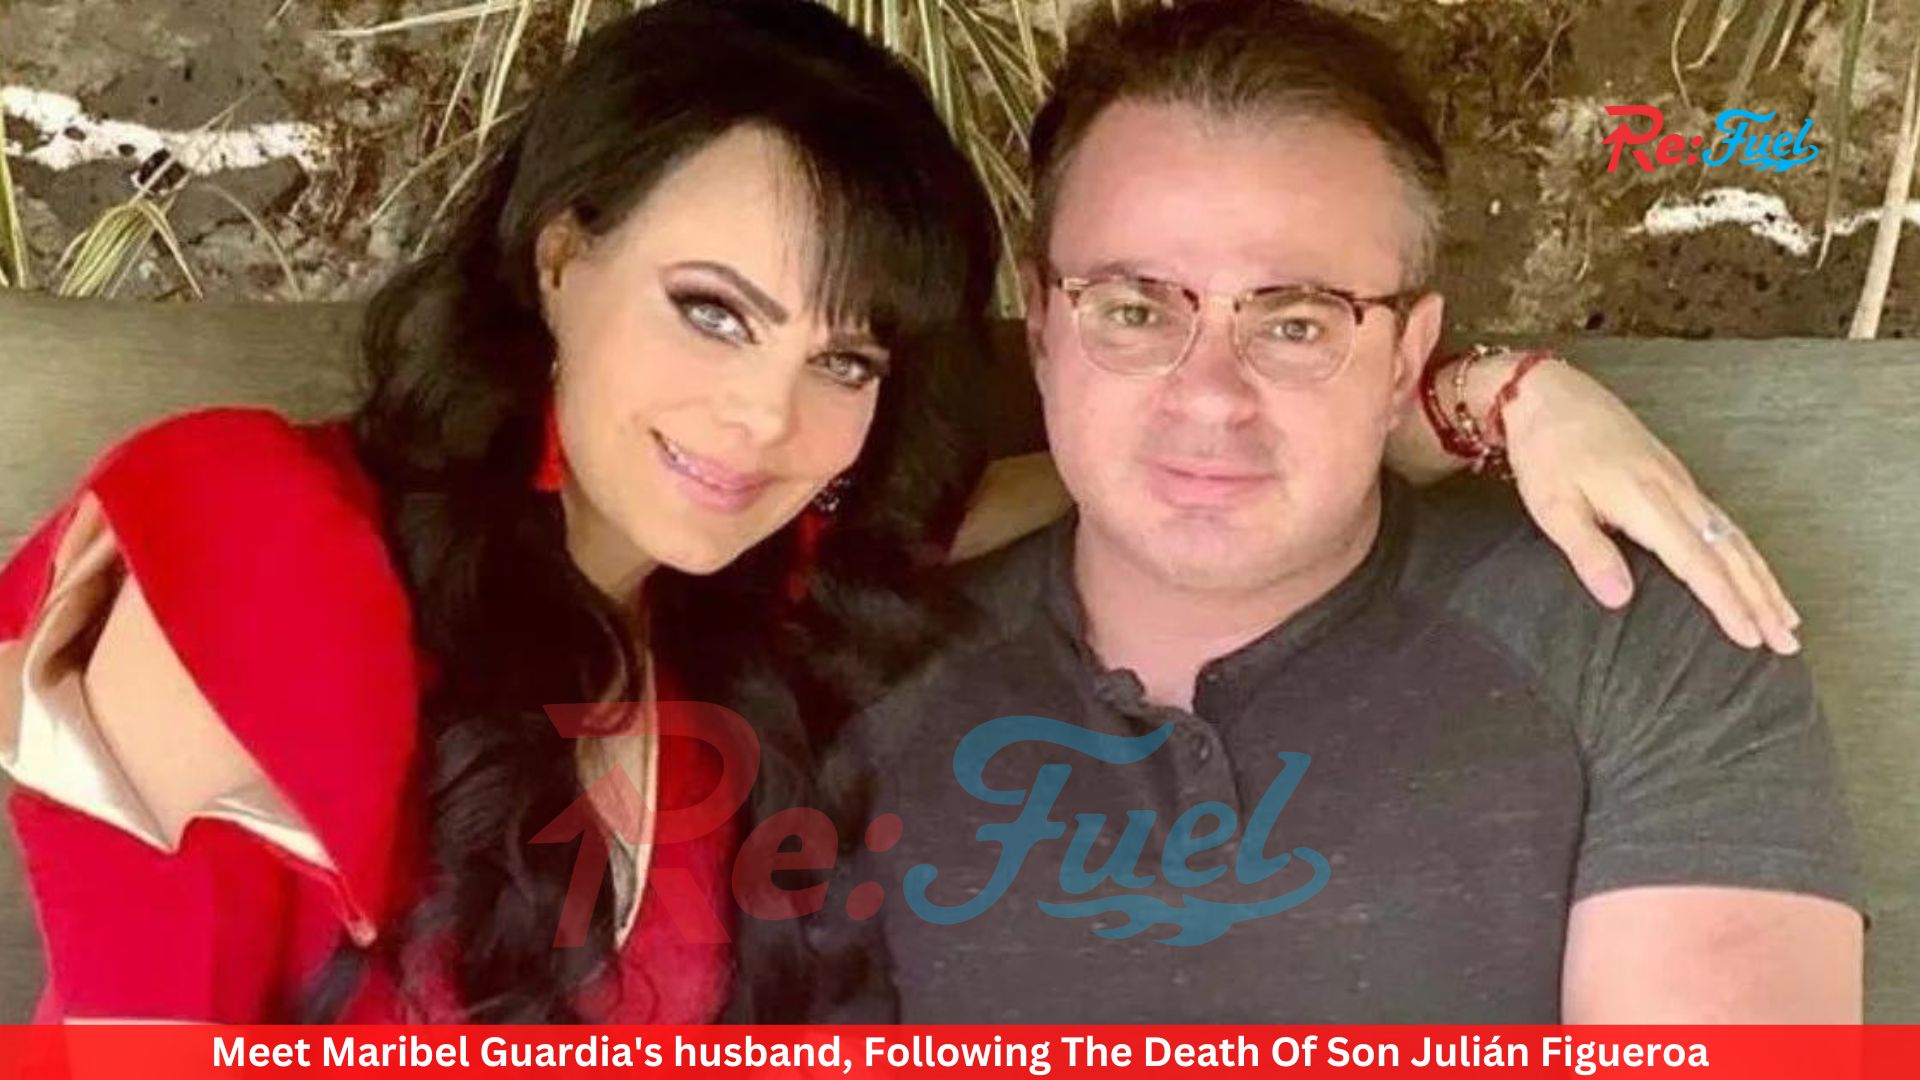 Who Is Maribel Guardia's Son? Julián Figueroa Has Died